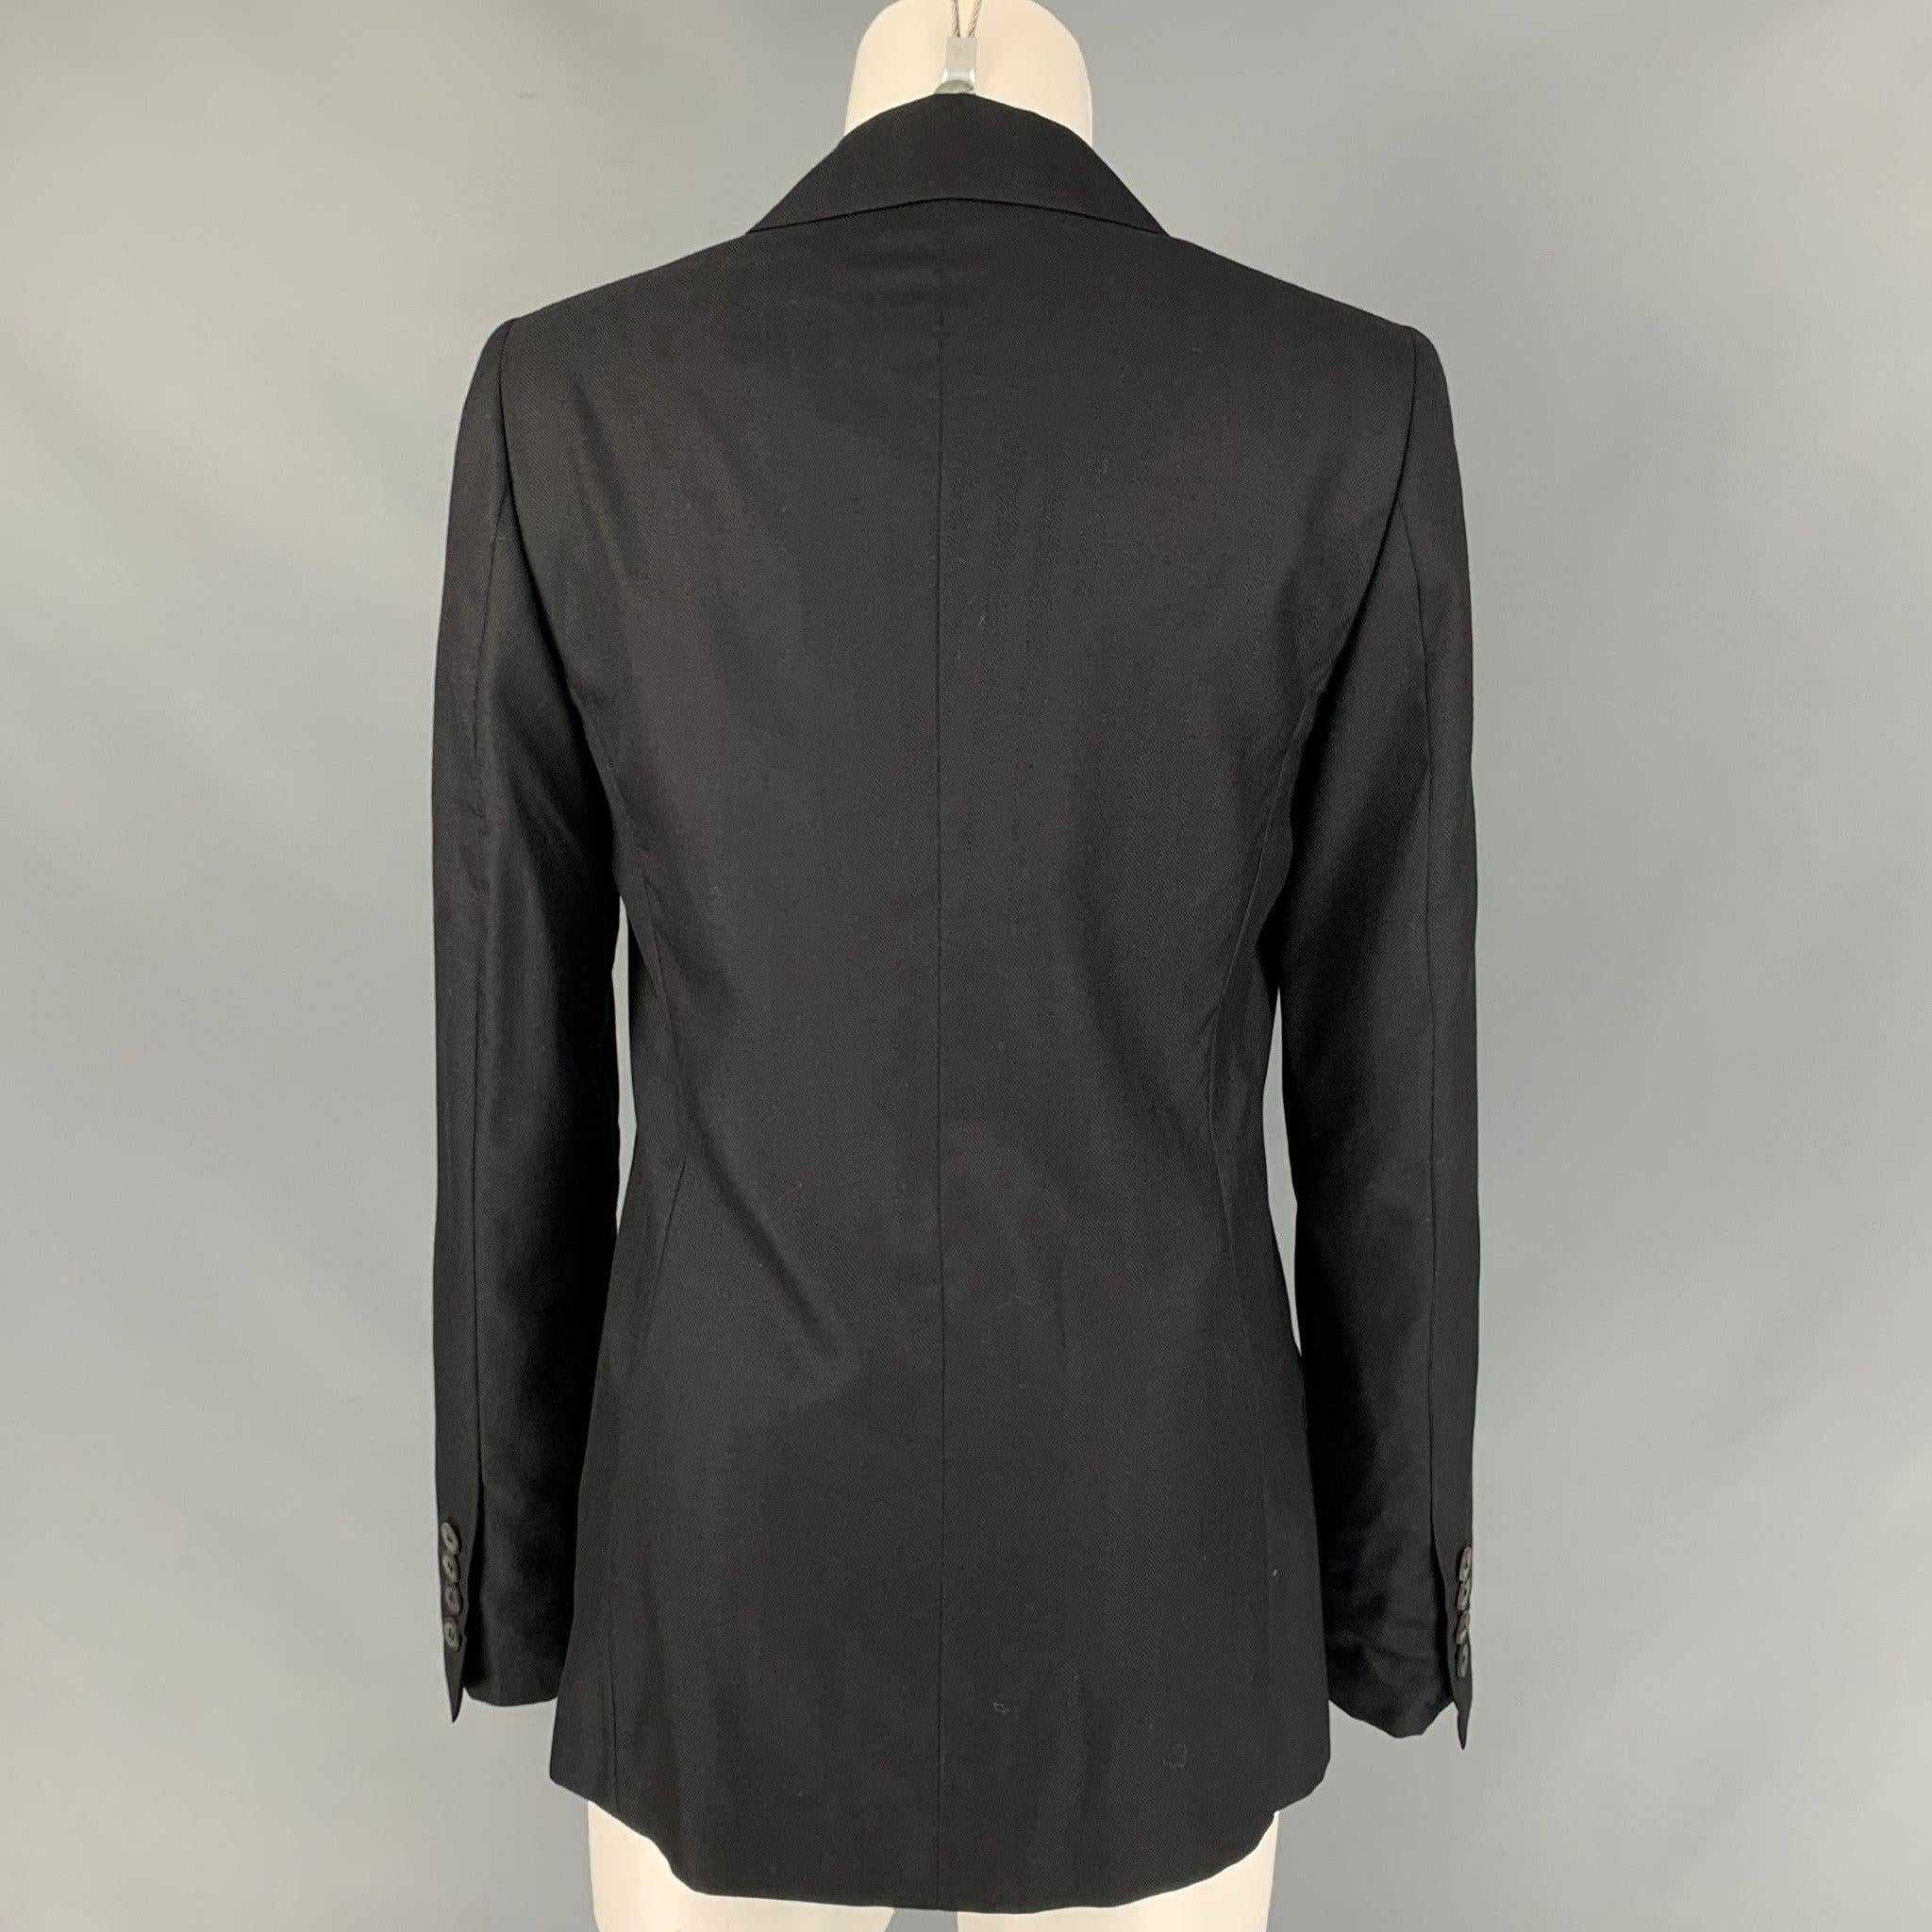 CALVIN KLEIN COLLECTION Size 6 Black Cashmere / Silk Jacke Blazer For Sale 1